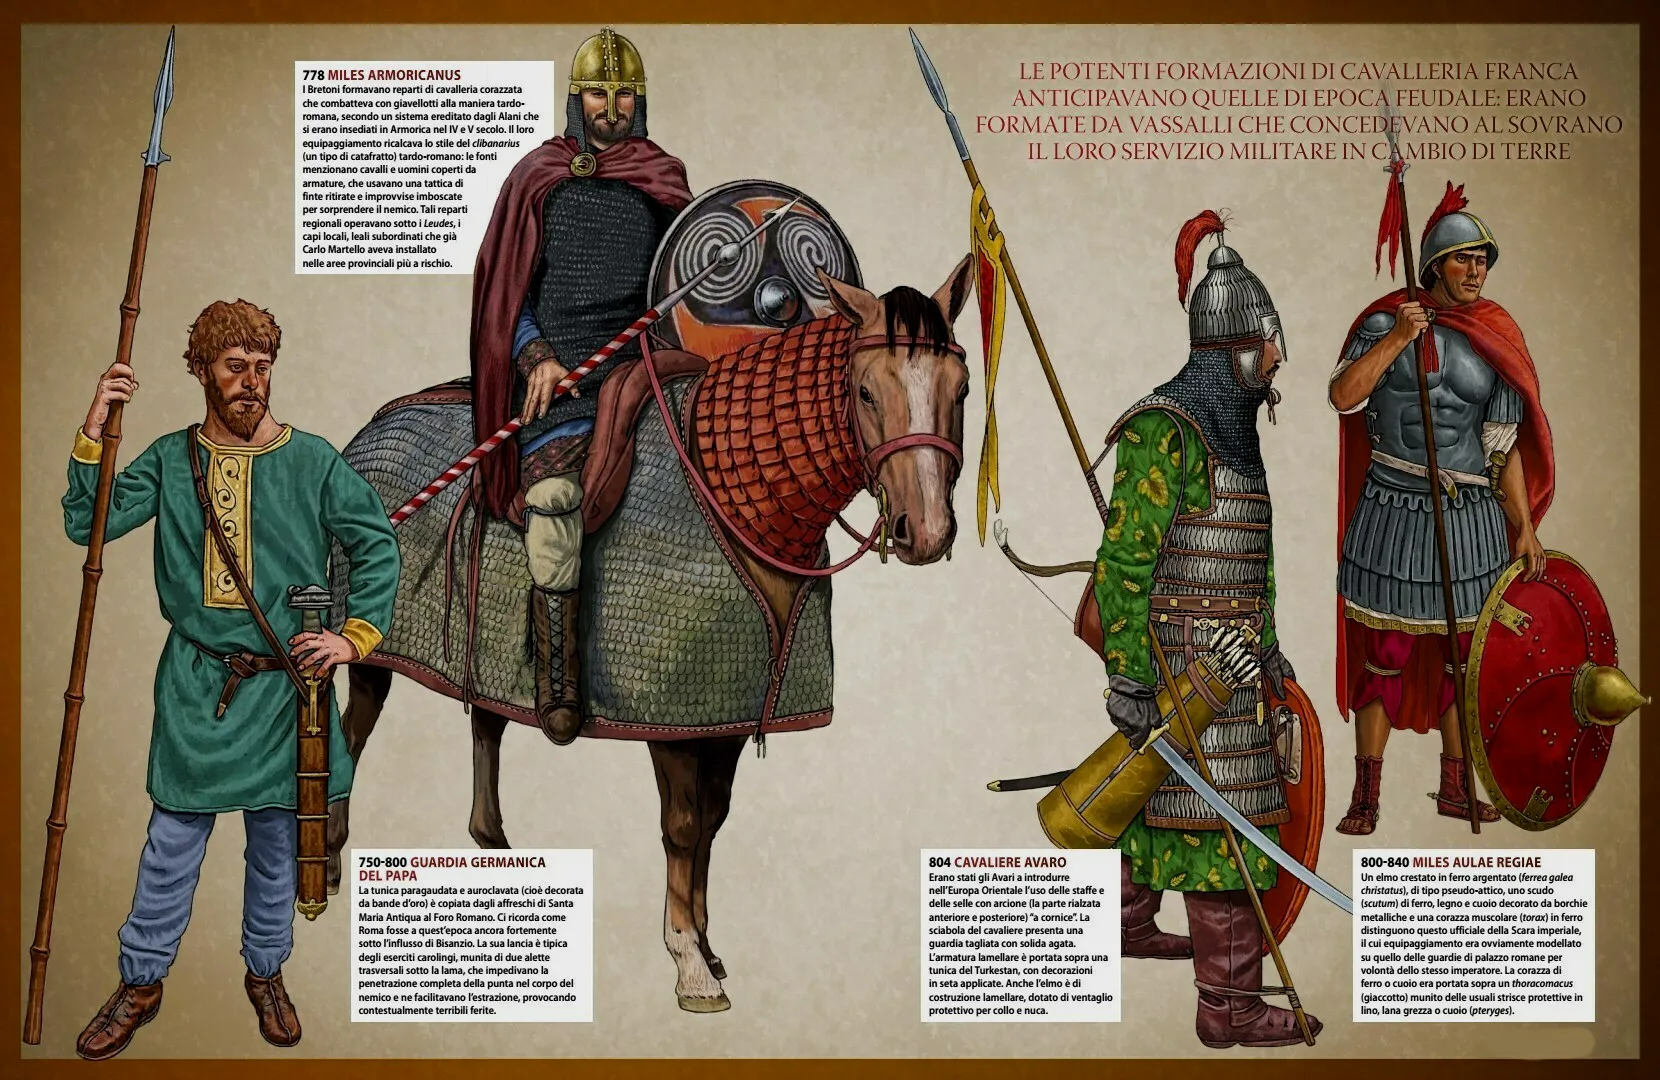 从左到右：1：教皇的日耳曼卫队，2：阿摩里卡（今布列塔尼）的不列颠人骑兵，在9世纪前期诗人埃默尔德（Ermoldus Nigellus）的诗篇里，记载这些不列颠人使用标枪战斗，马匹也披挂装甲，可见当时的西欧已经出现了具装骑兵，3：阿瓦尔骑兵，4：法兰克皇宫守卫